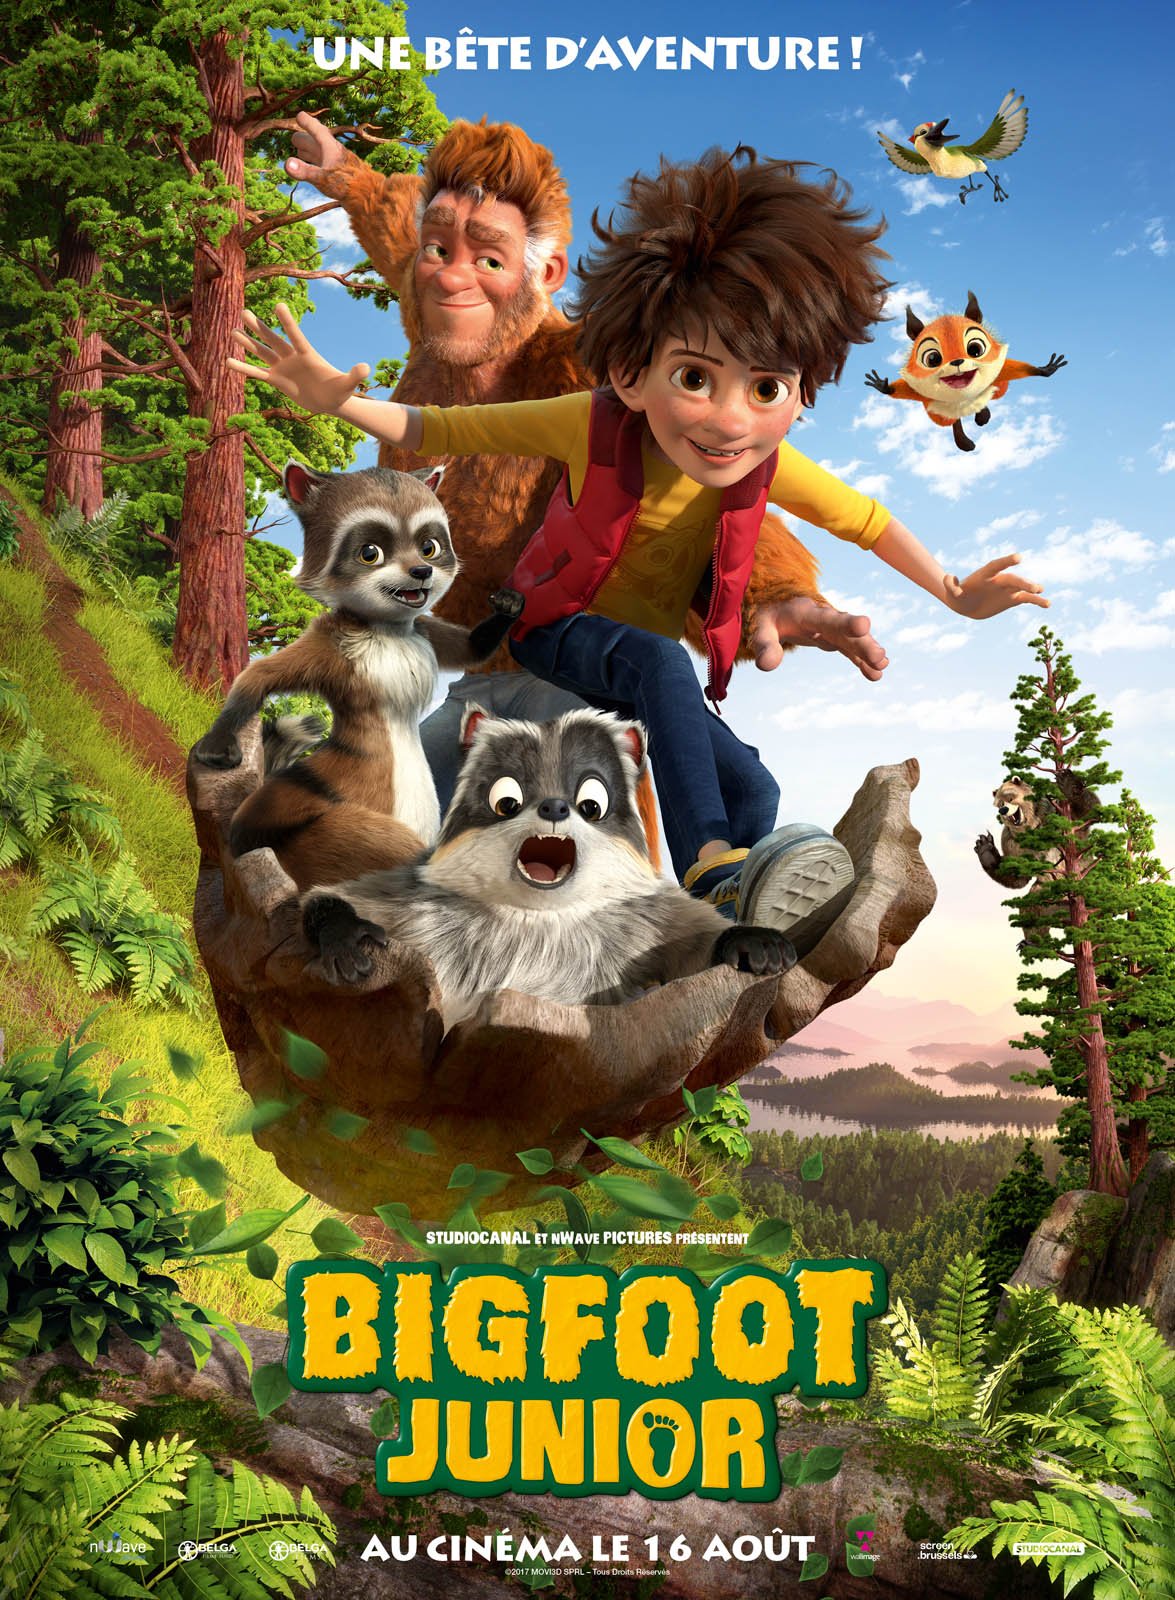 RÃÂ©sultat de recherche d'images pour "Bigfoot Junior"